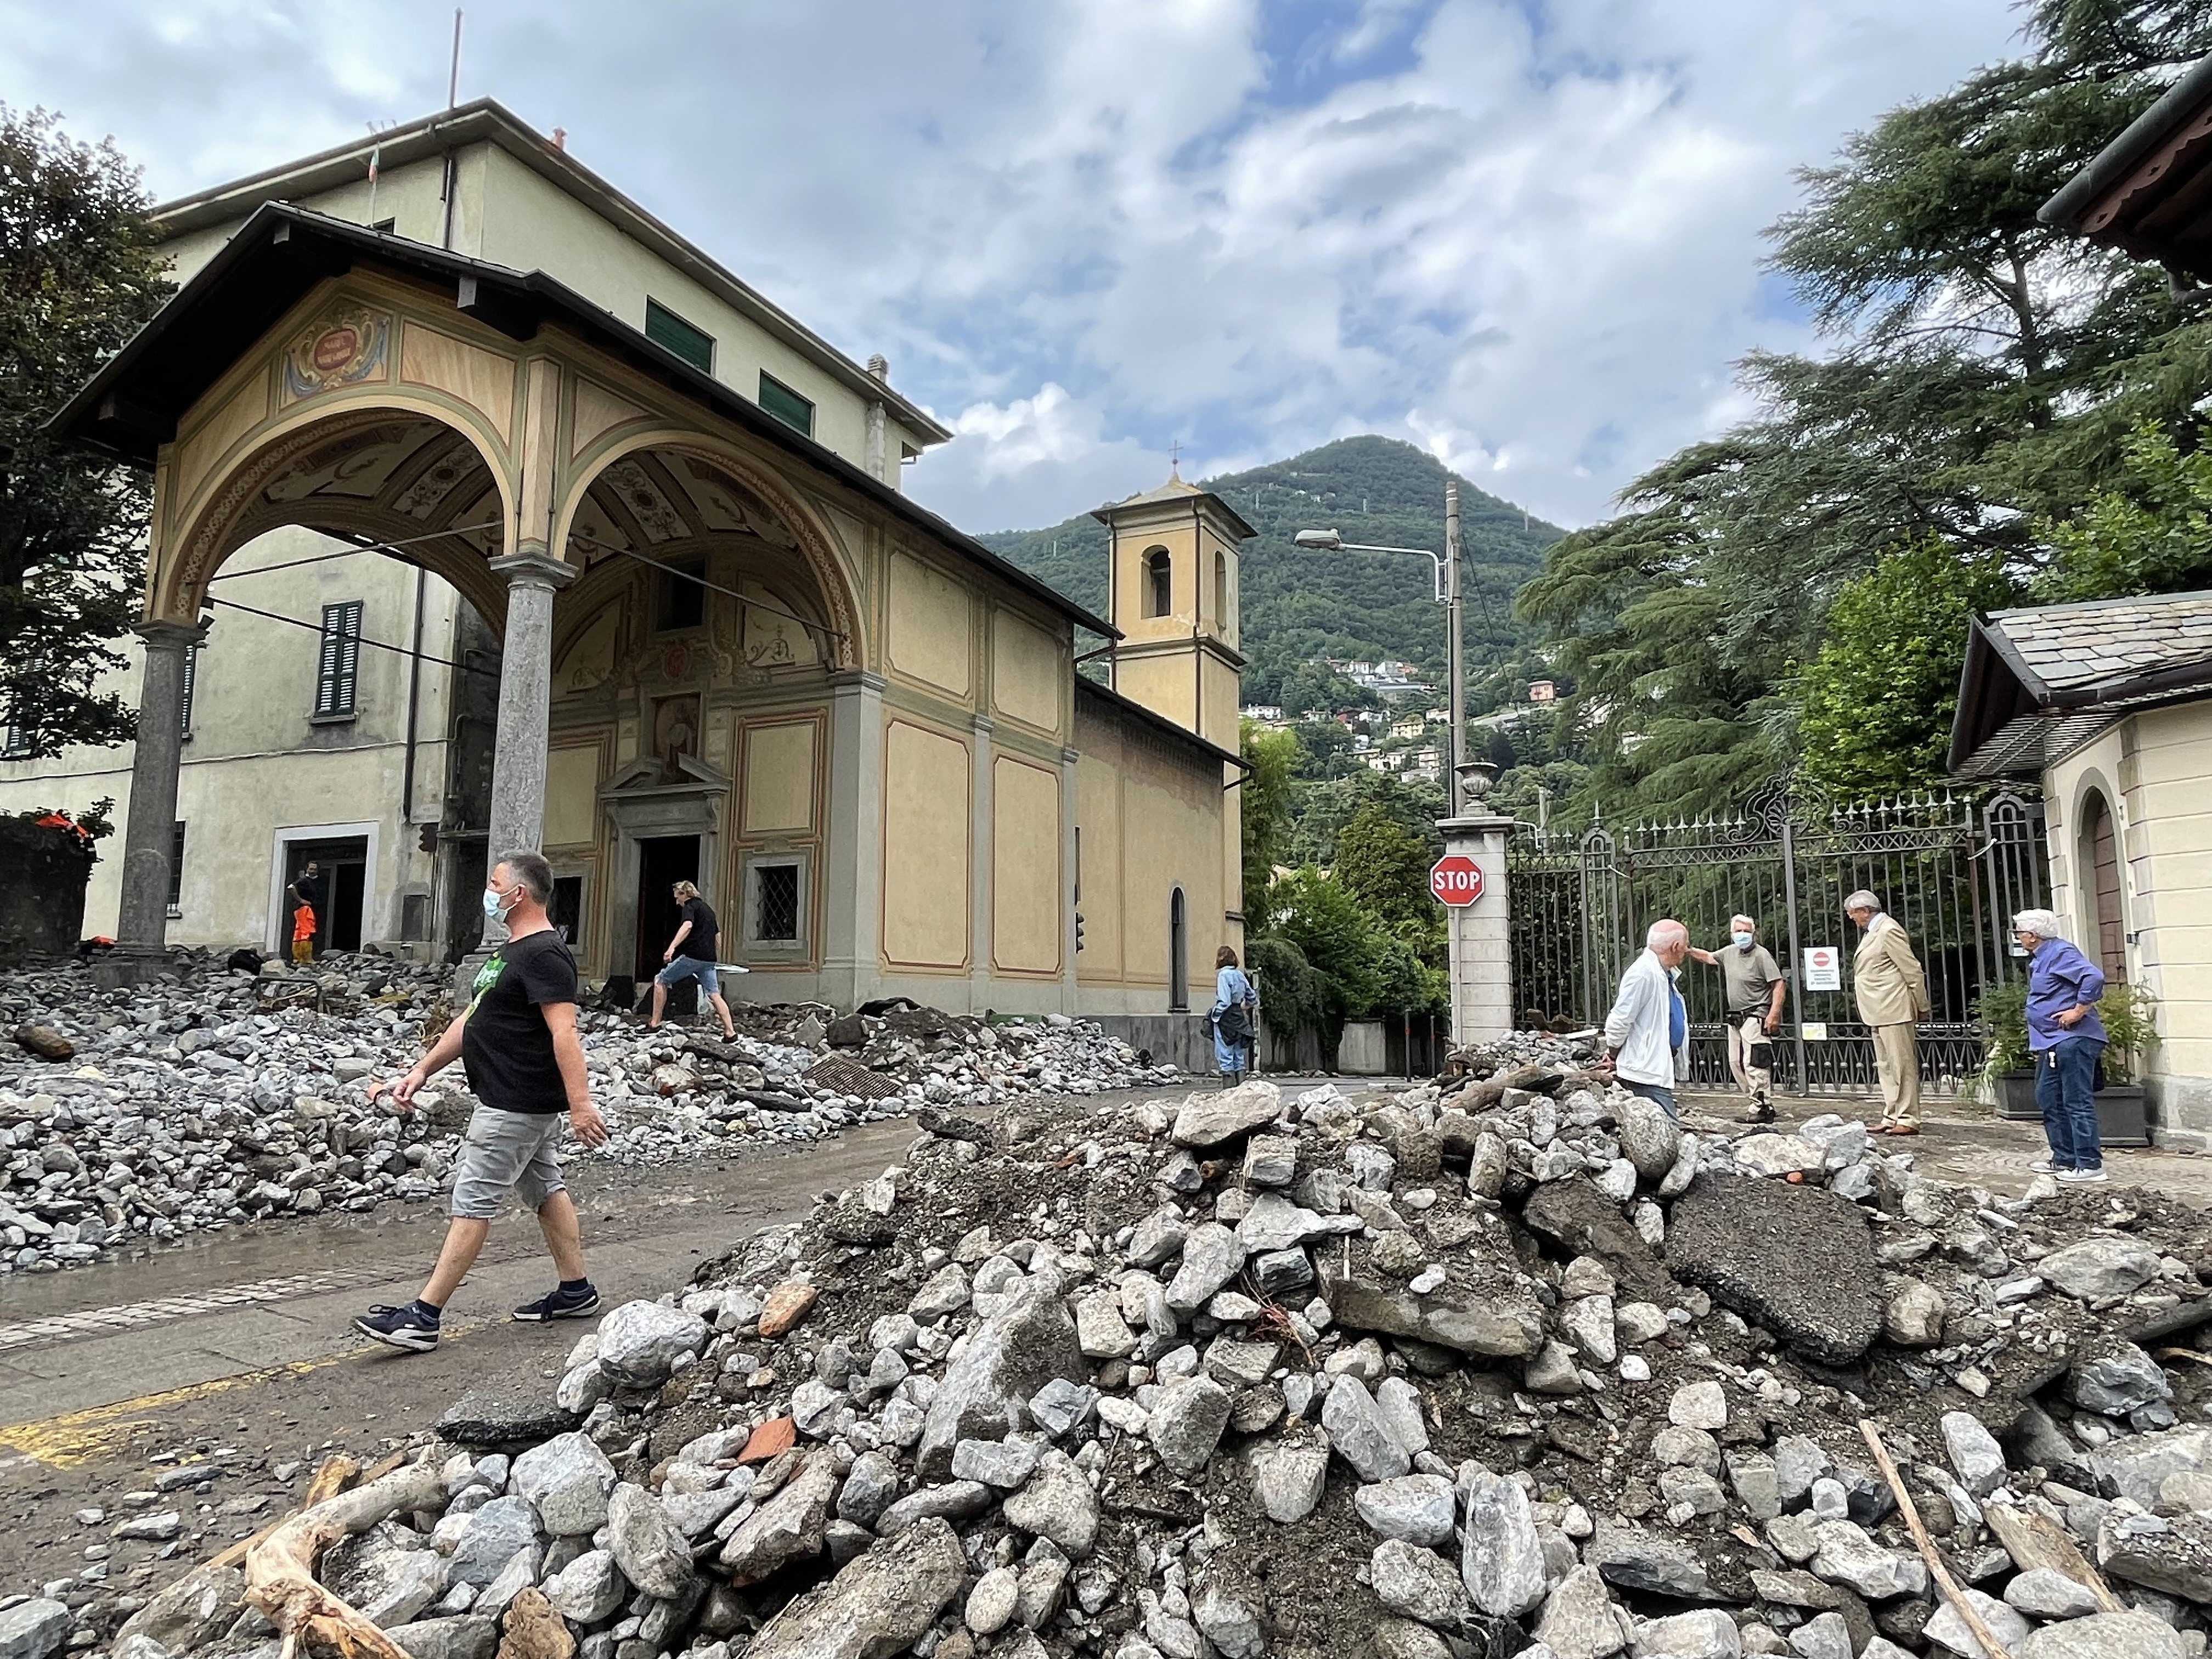 George Clooney apontou que Cernobbio, comuna italiana próxima ao Lago de Como, também foi afetada pelas tempestades do final de julho de 2021 (Foto: Getty Images)